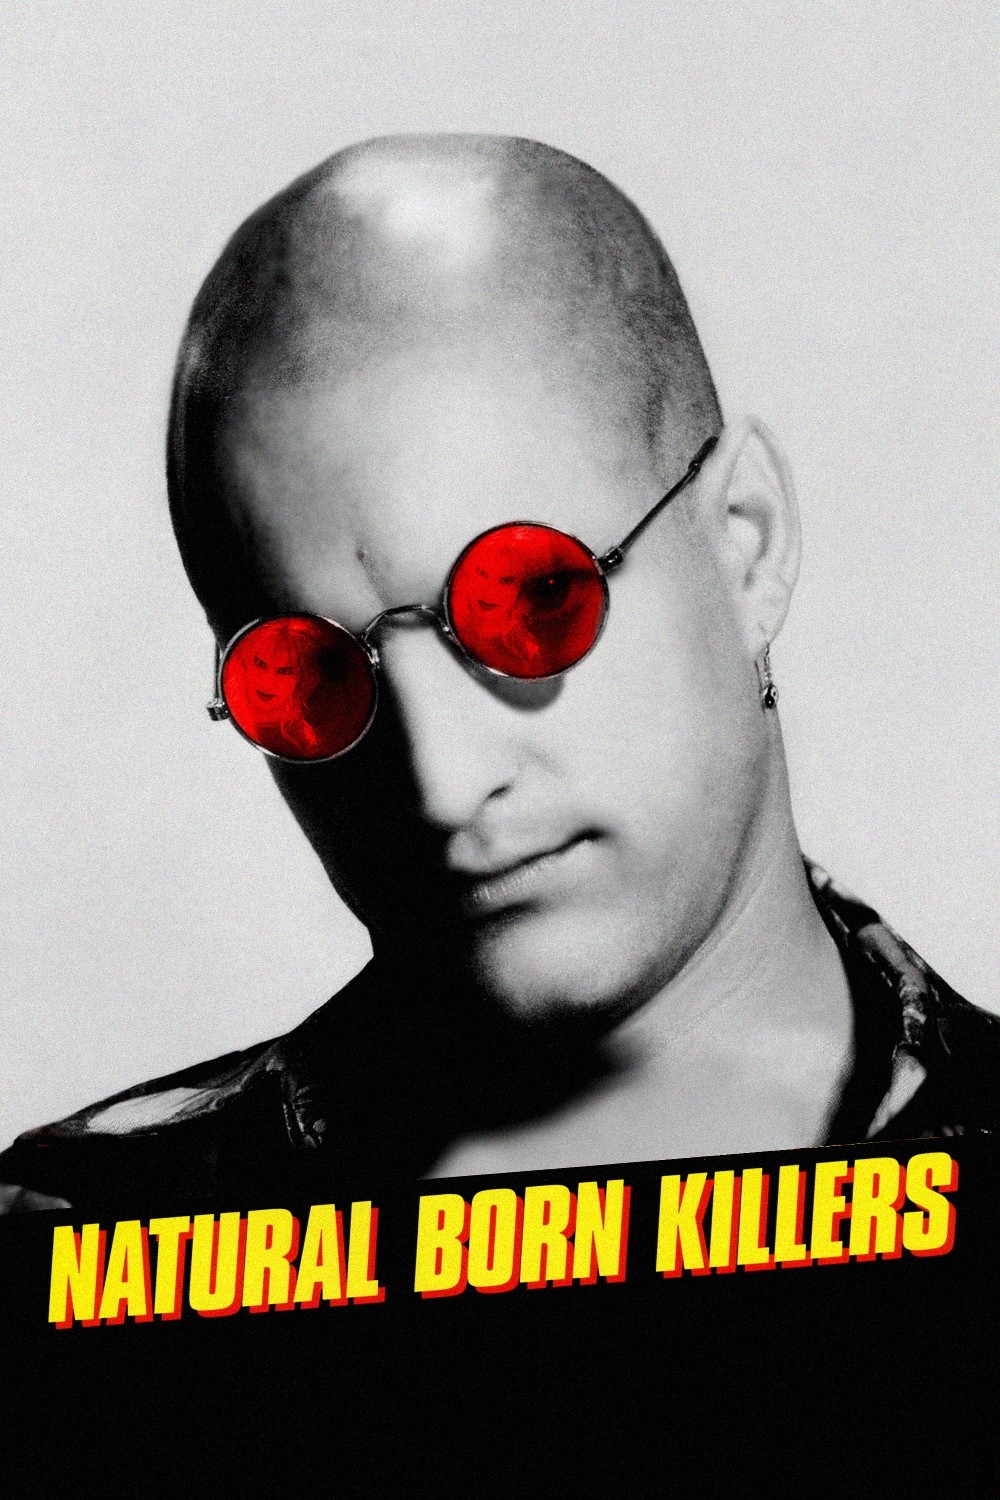 At The Back: Natural Born Killers